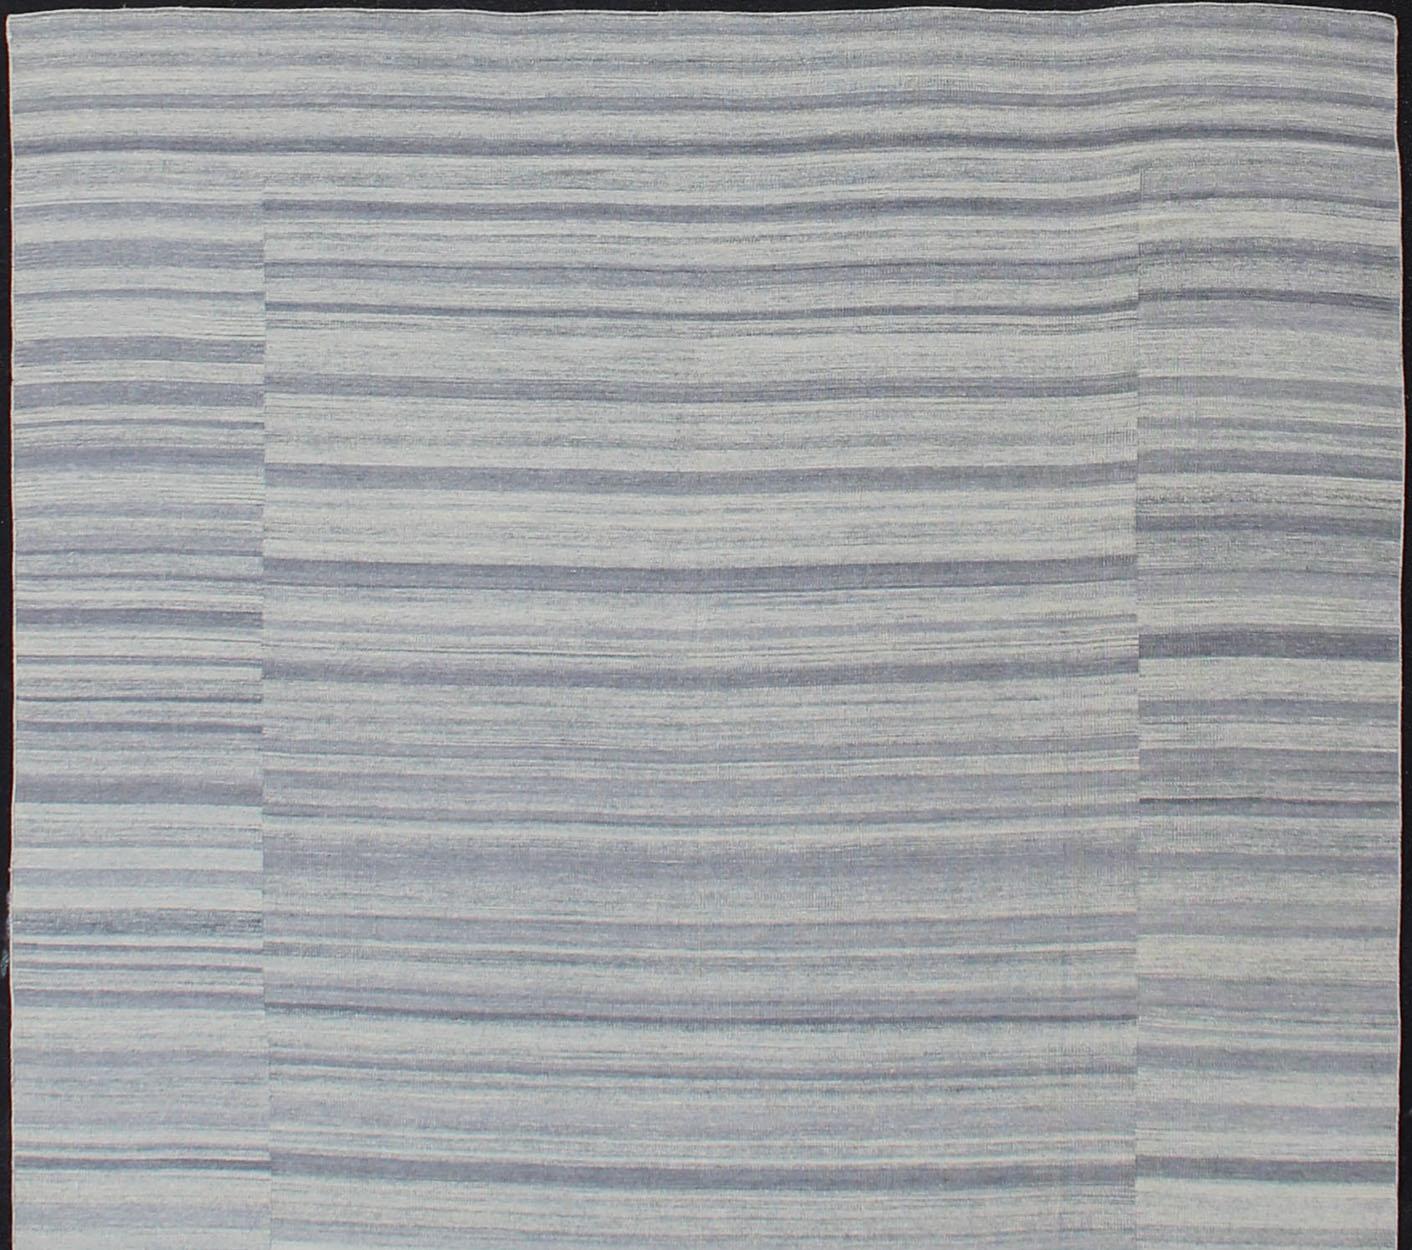 Lässiger Kilim und Modern Design Kilim Teppich mit Streifenmuster in gedämpften Blau- und Grautönen, Teppich OB-103715362-60180007, Herkunftsland / Typ: Indien / Kelim

Dieser lässig-moderne Teppich zeichnet sich durch ein gestreiftes Design und